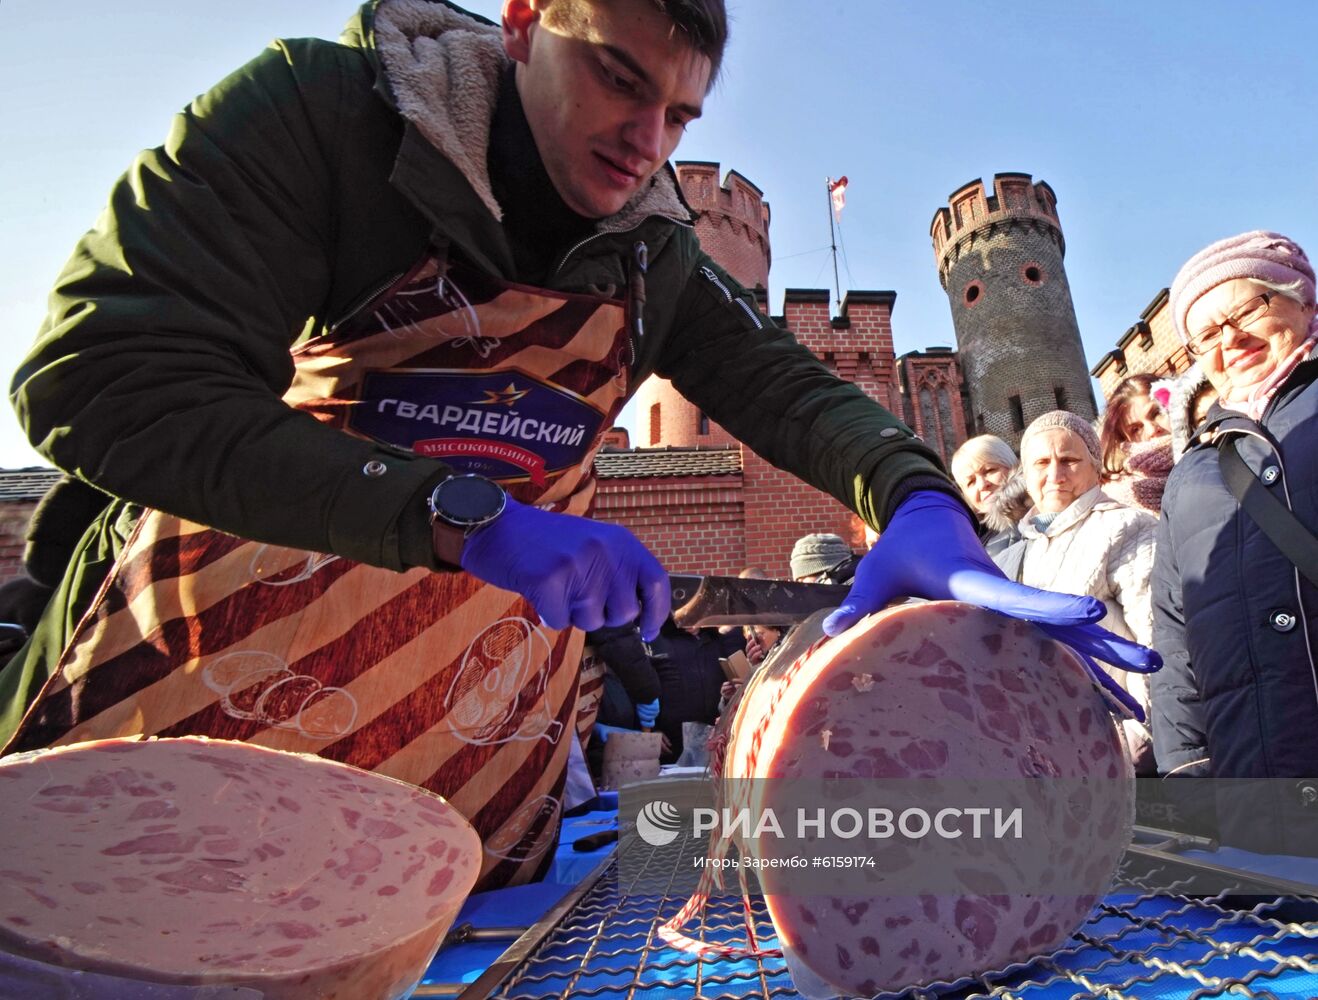  "День длинной колбасы" в Калининграде